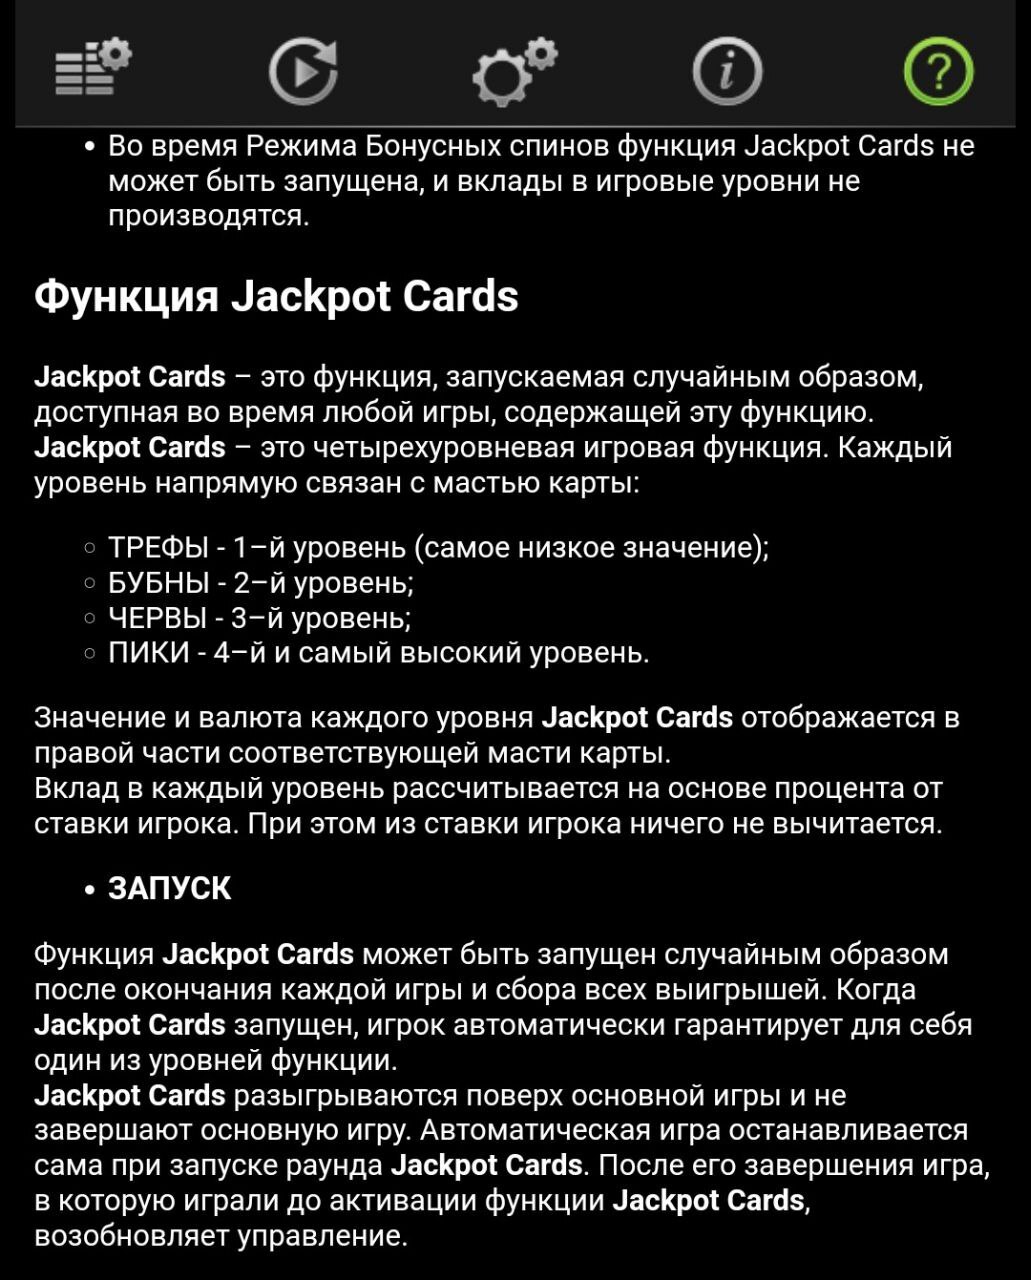 Функция Jackpot Cards